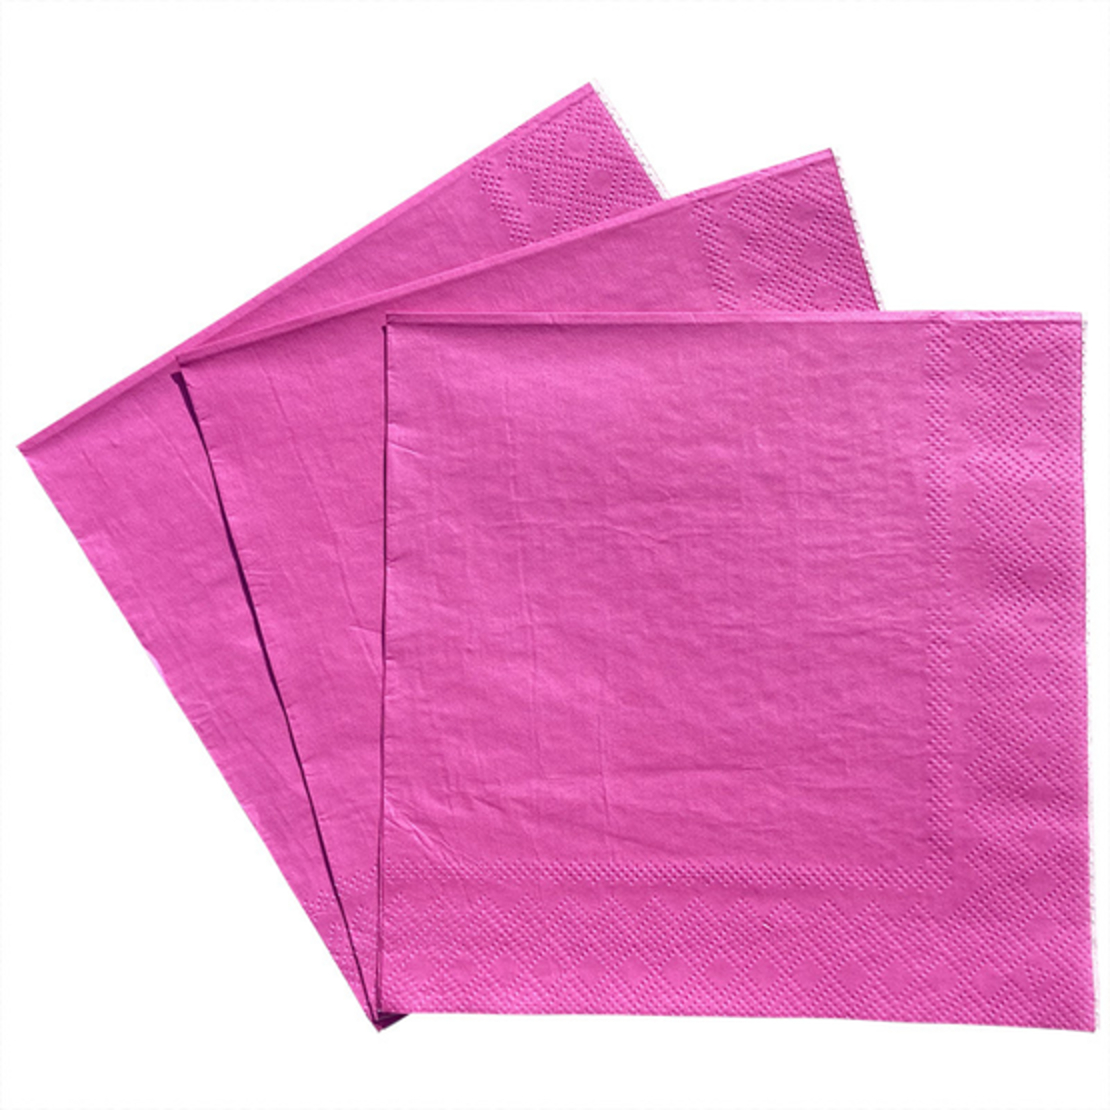 מפיות נייר חלקות צבע ורוד פוקסיה - 20 יחידות